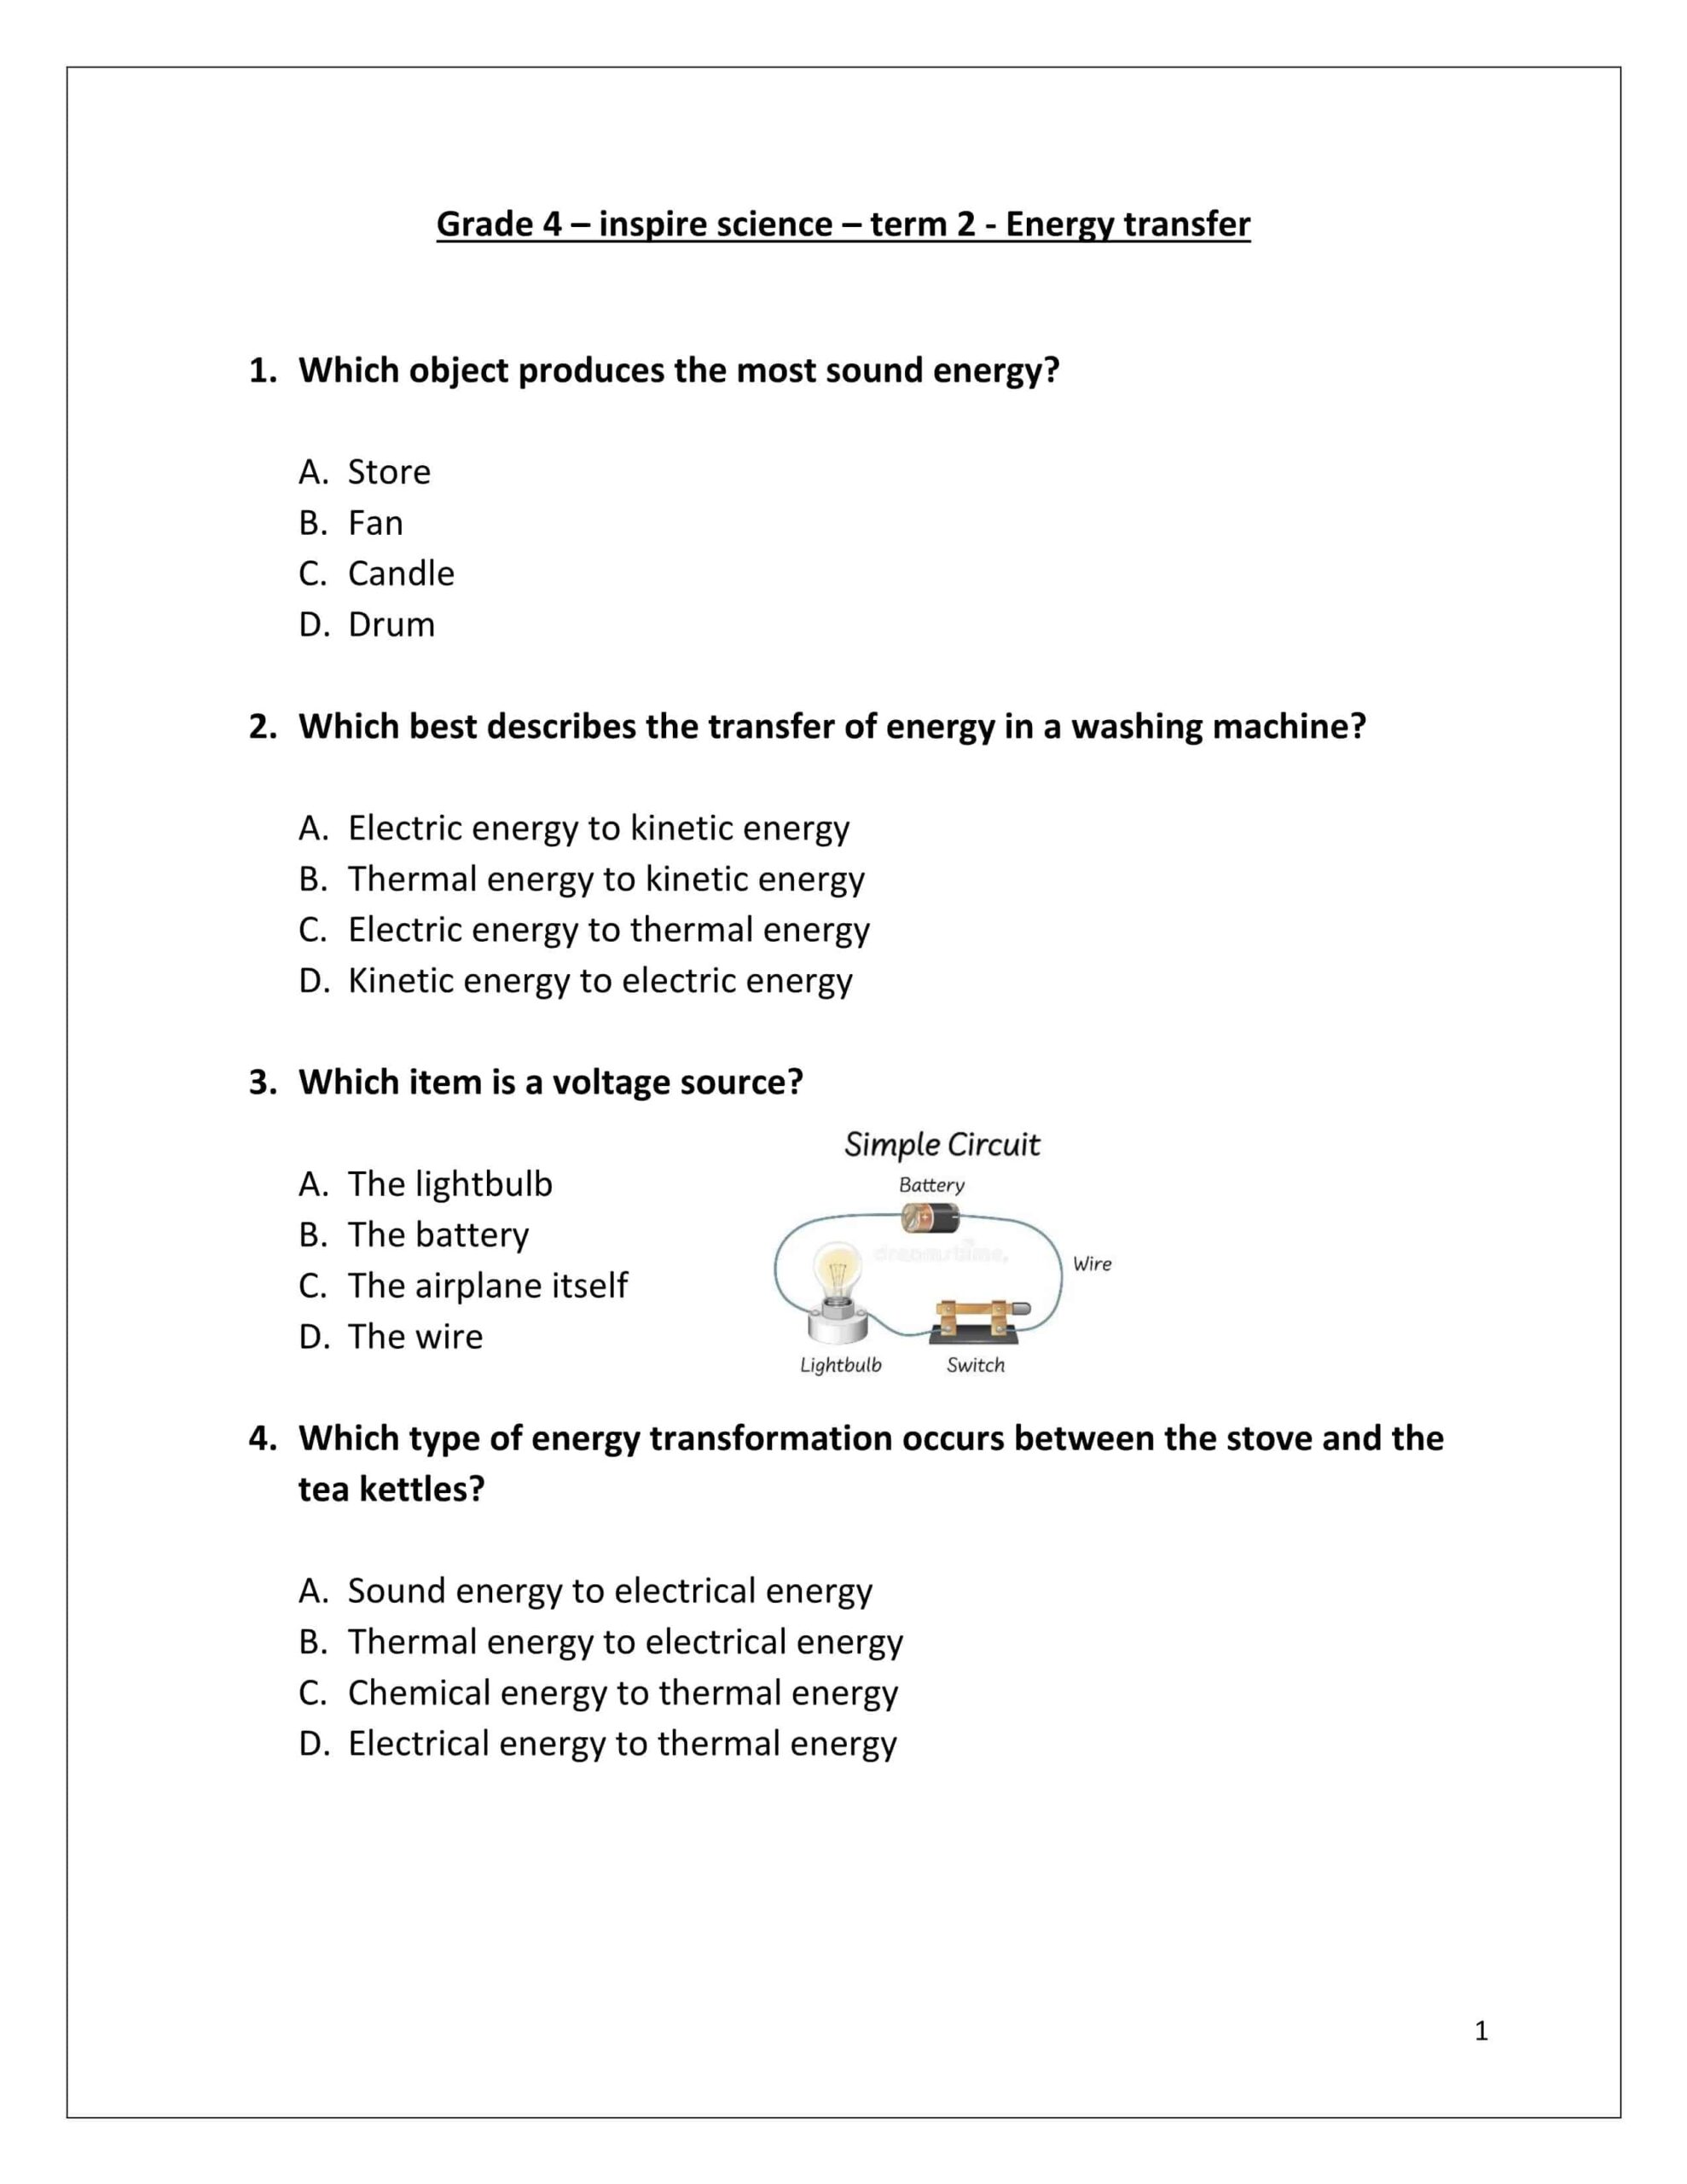 حل أوراق عمل Energy transfer بالإنجليزي العلوم المتكاملة الصف الرابع